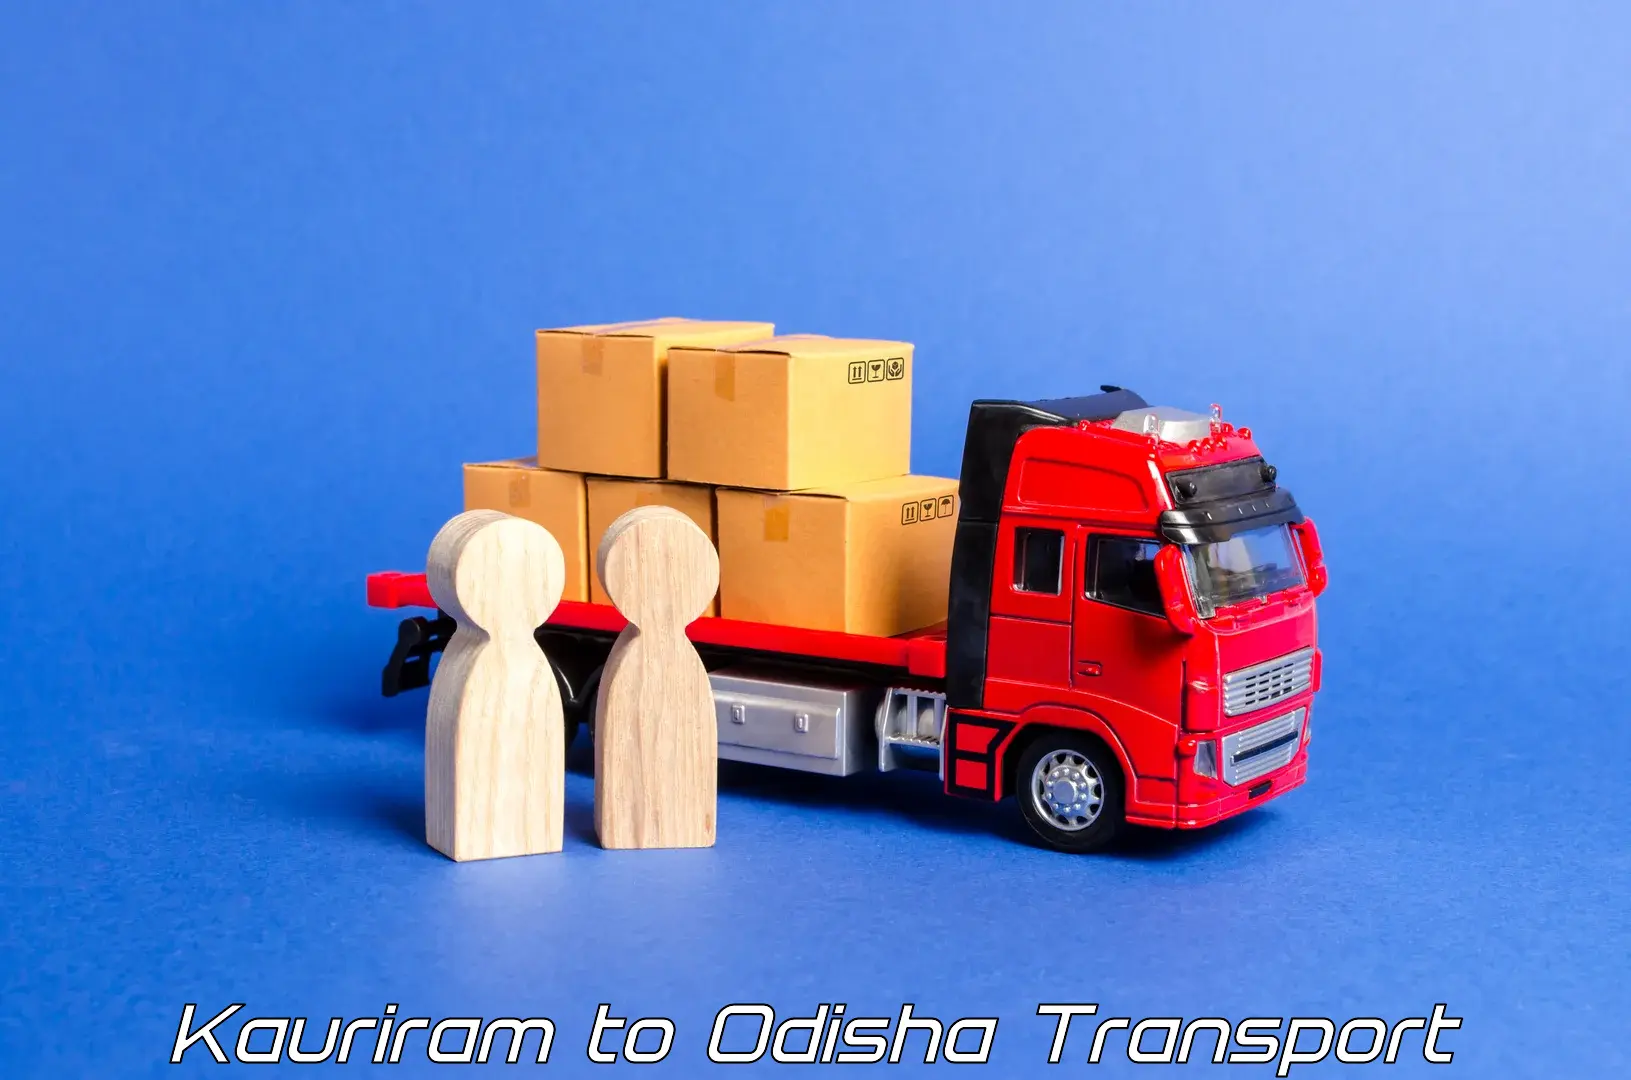 Online transport booking Kauriram to Barkote